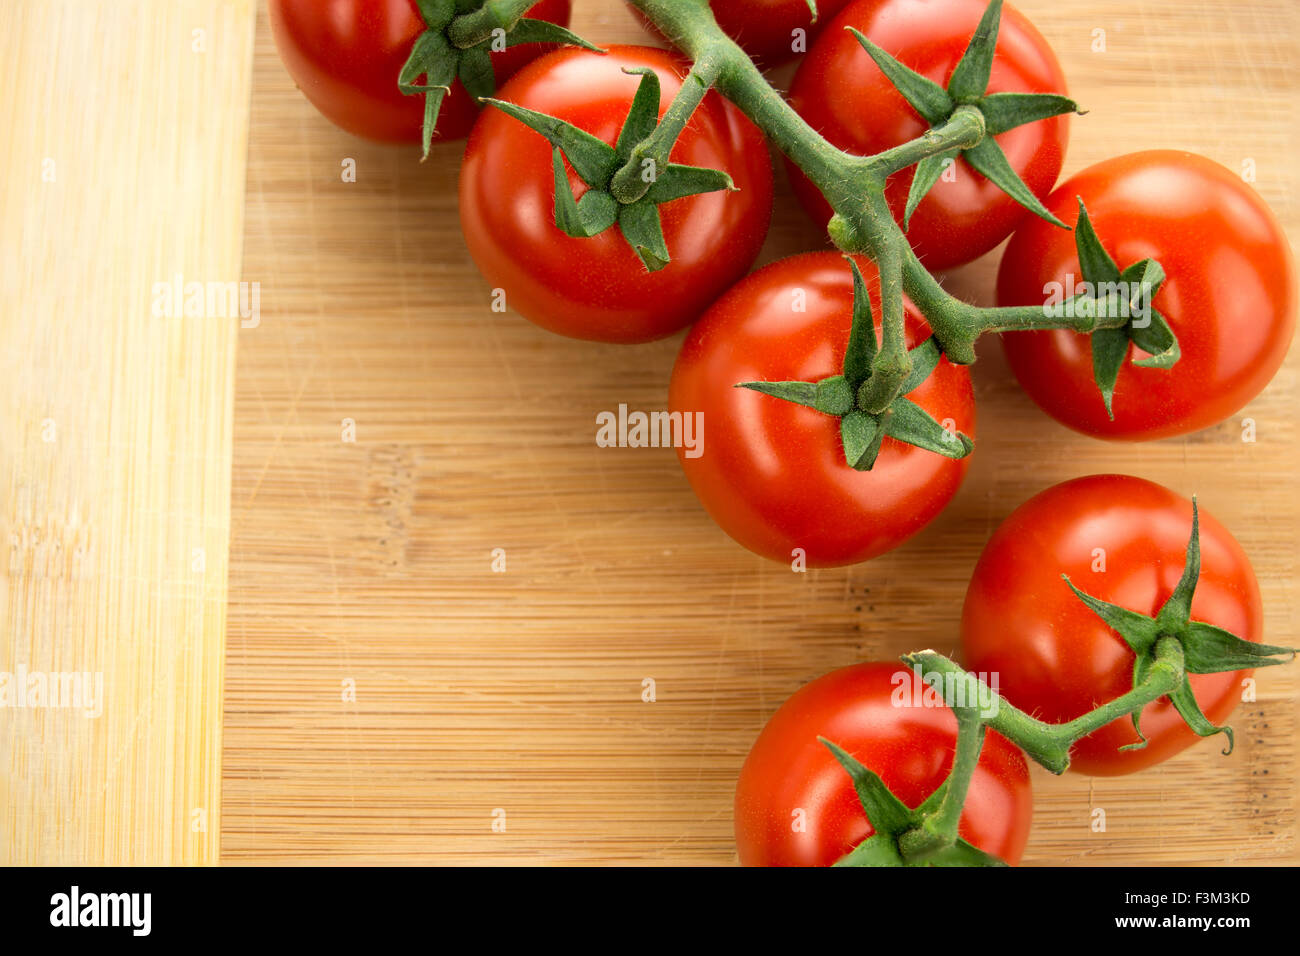 Libre Vue aérienne de tomates cerises avec vignes vertes disposées sur une planche à découper en bois Banque D'Images